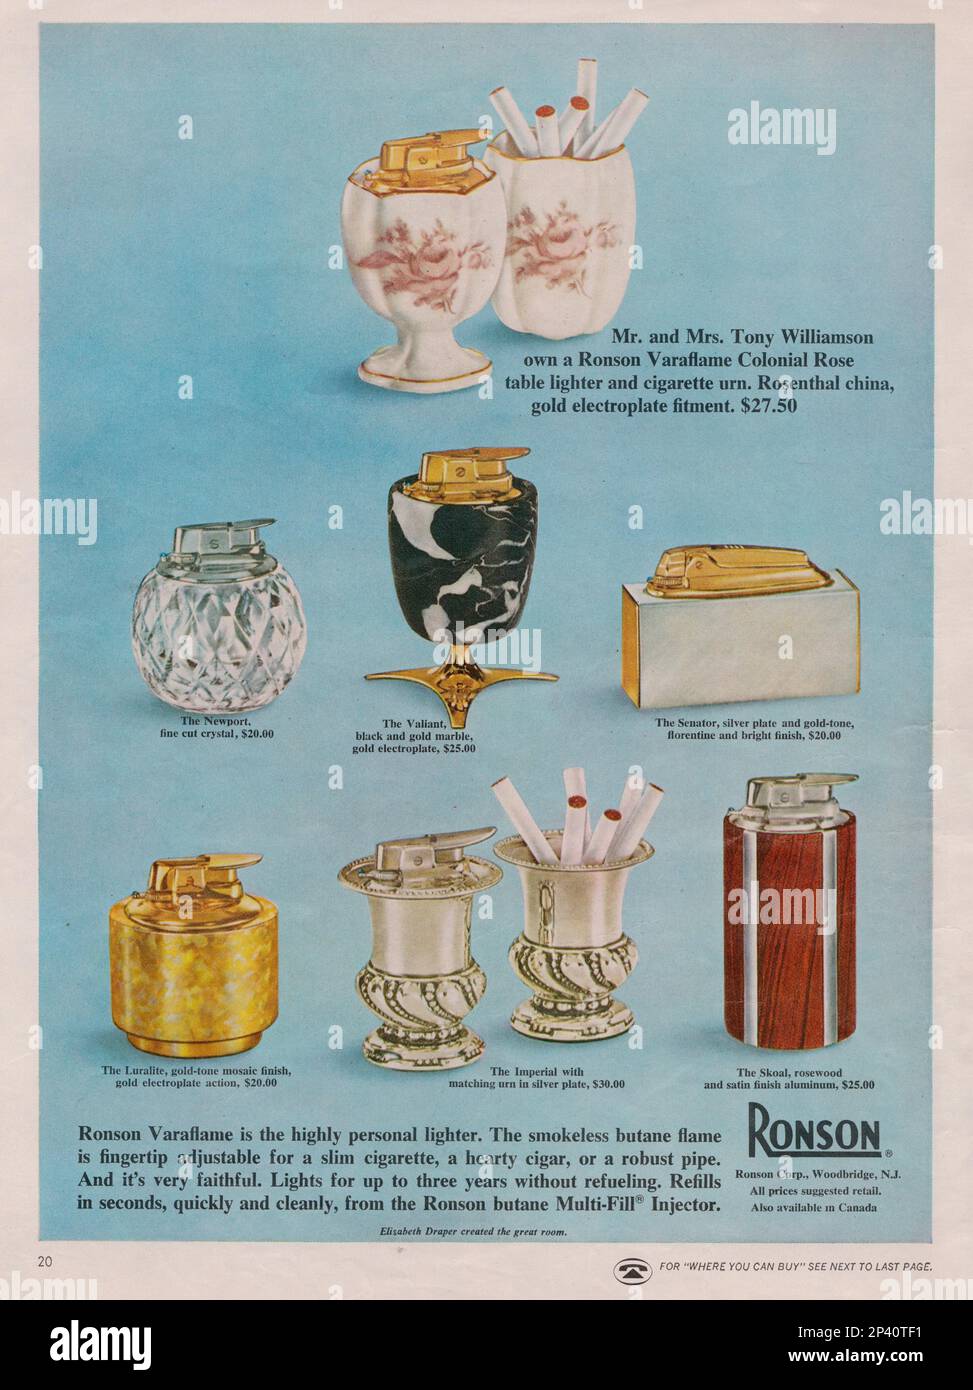 Allume-cigare et allume-cigare Ronson Varaflame. Bougies Ronson Caraflame. Publicité dans le magazine d'époque Ronson 1960s Banque D'Images